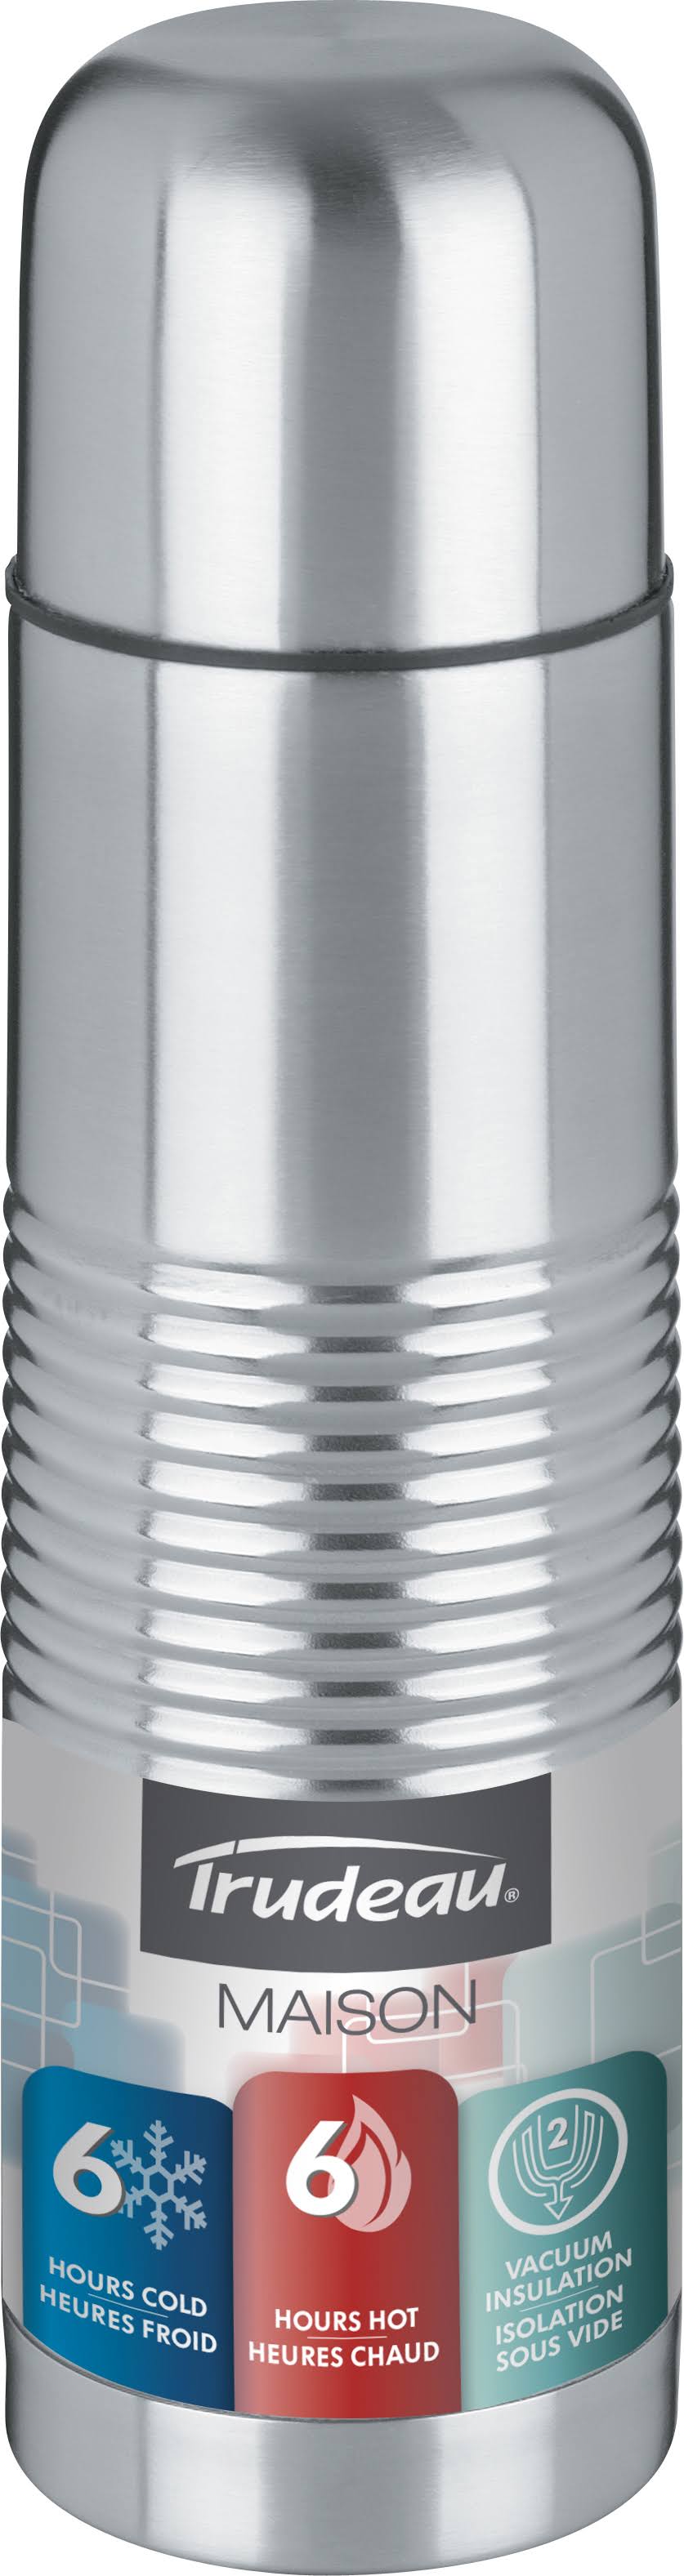 Trudeau Mirror Vacuum Insulated Bottle